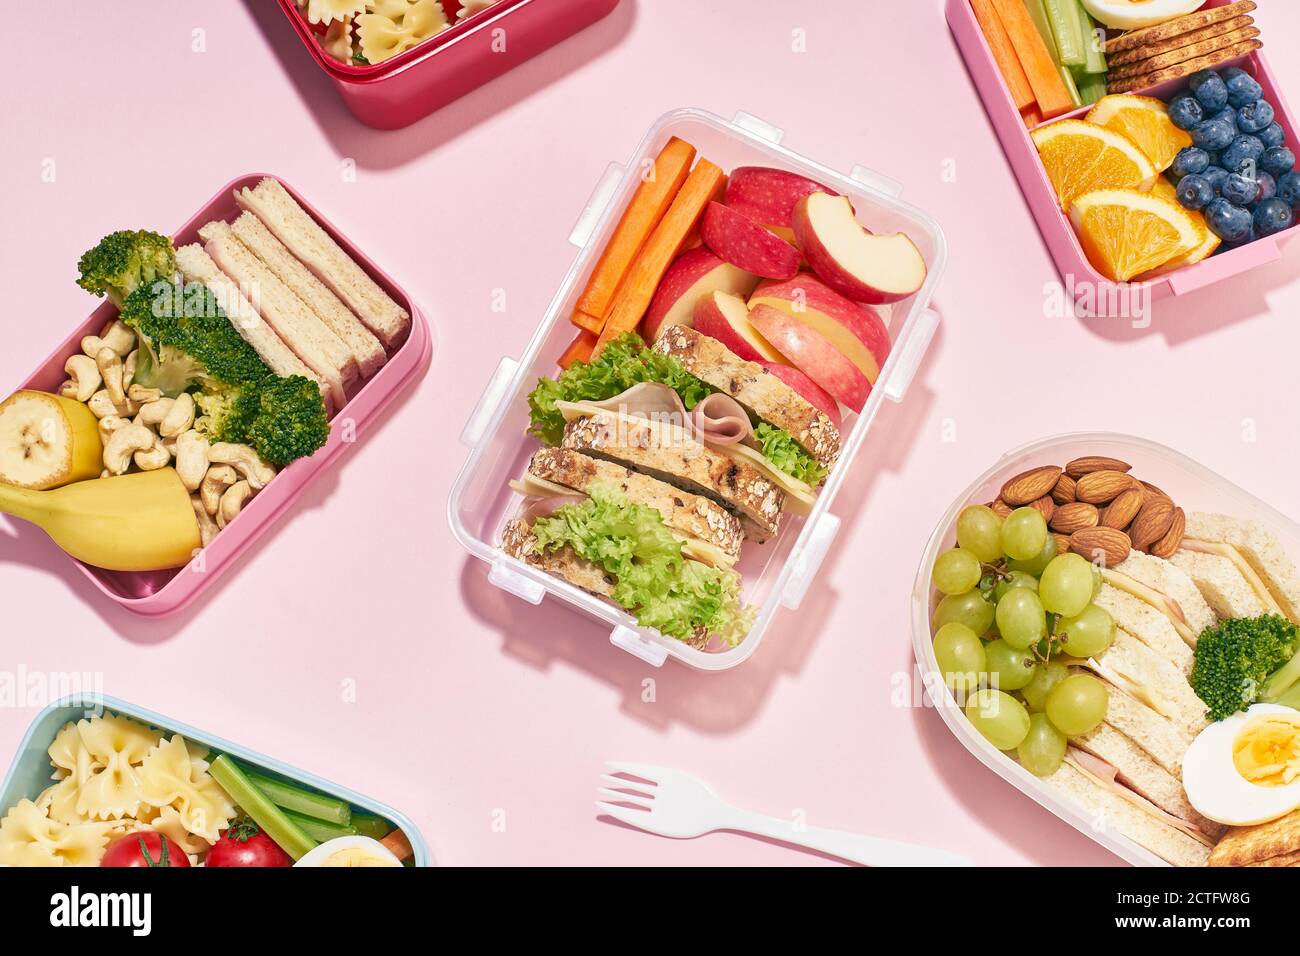 Vue de dessus avec des boîtes-repas scolaires avec divers repas sains nutritifs sur fond rose. Repas du midi d'en haut Banque D'Images